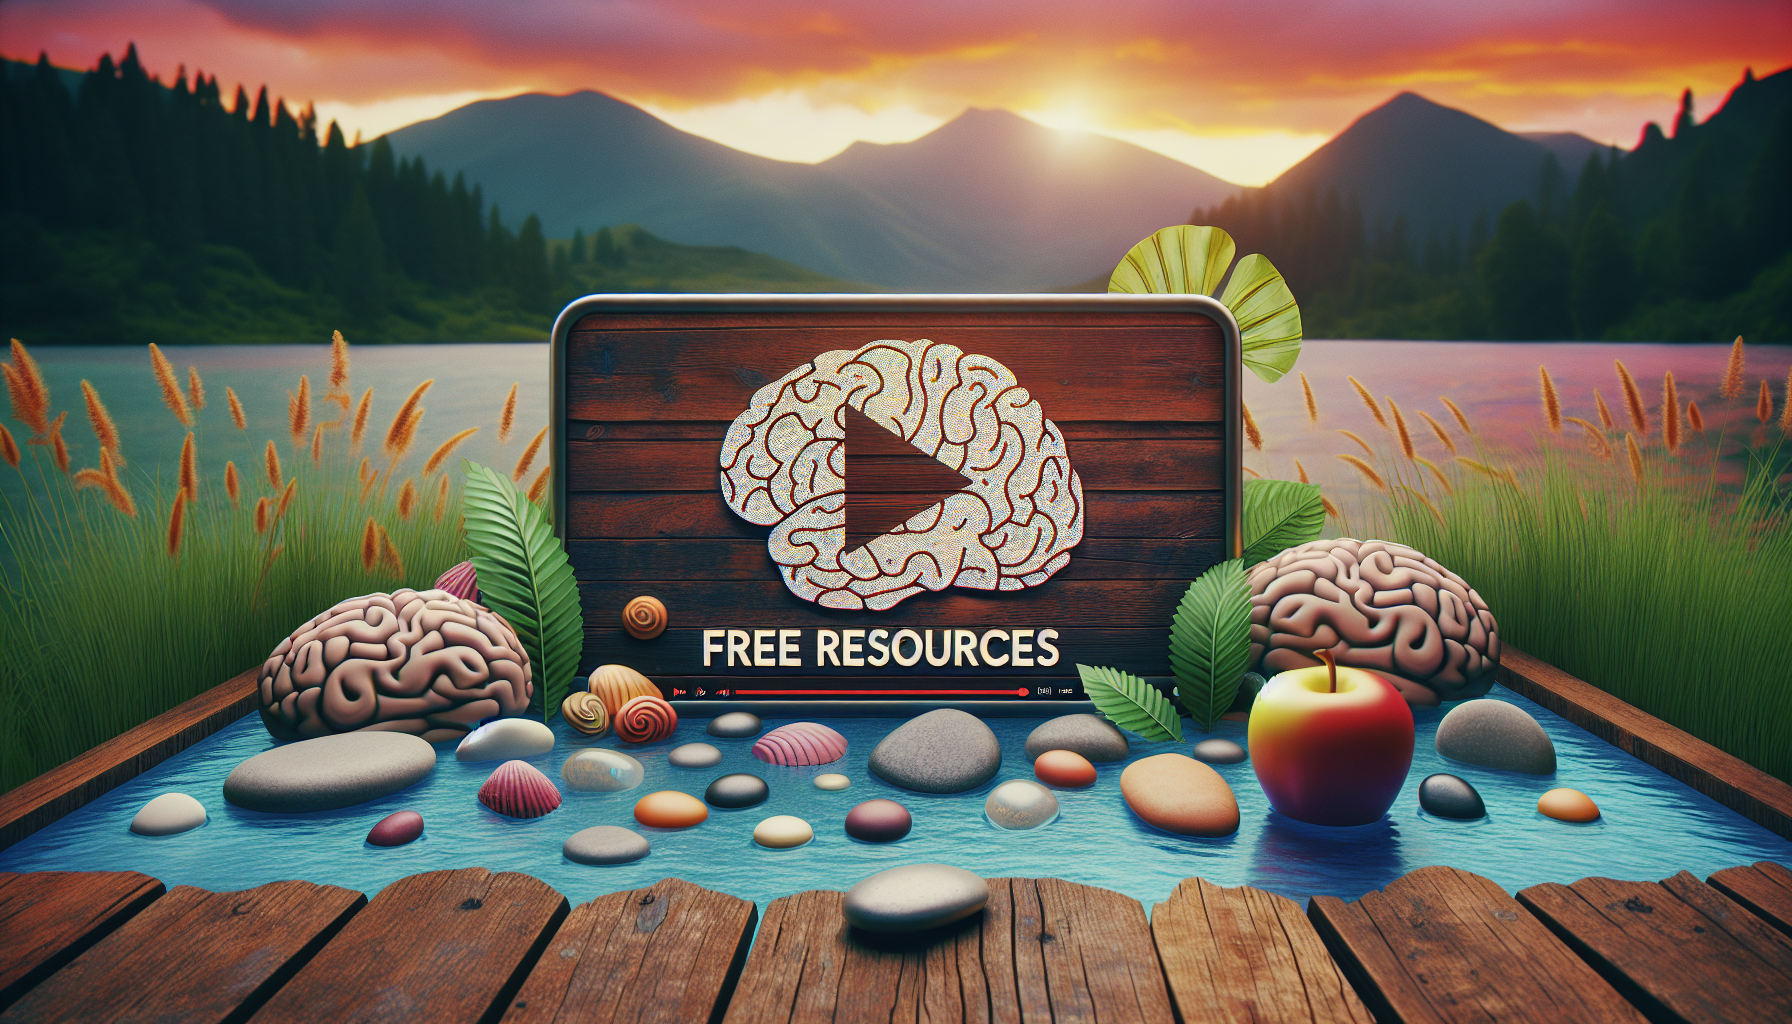 découvrez nos ressources gratuites en psychologie, santé et bien-être. profitez de vidéos de relaxation pour vous détendre et améliorer votre bien-être mental et physique.